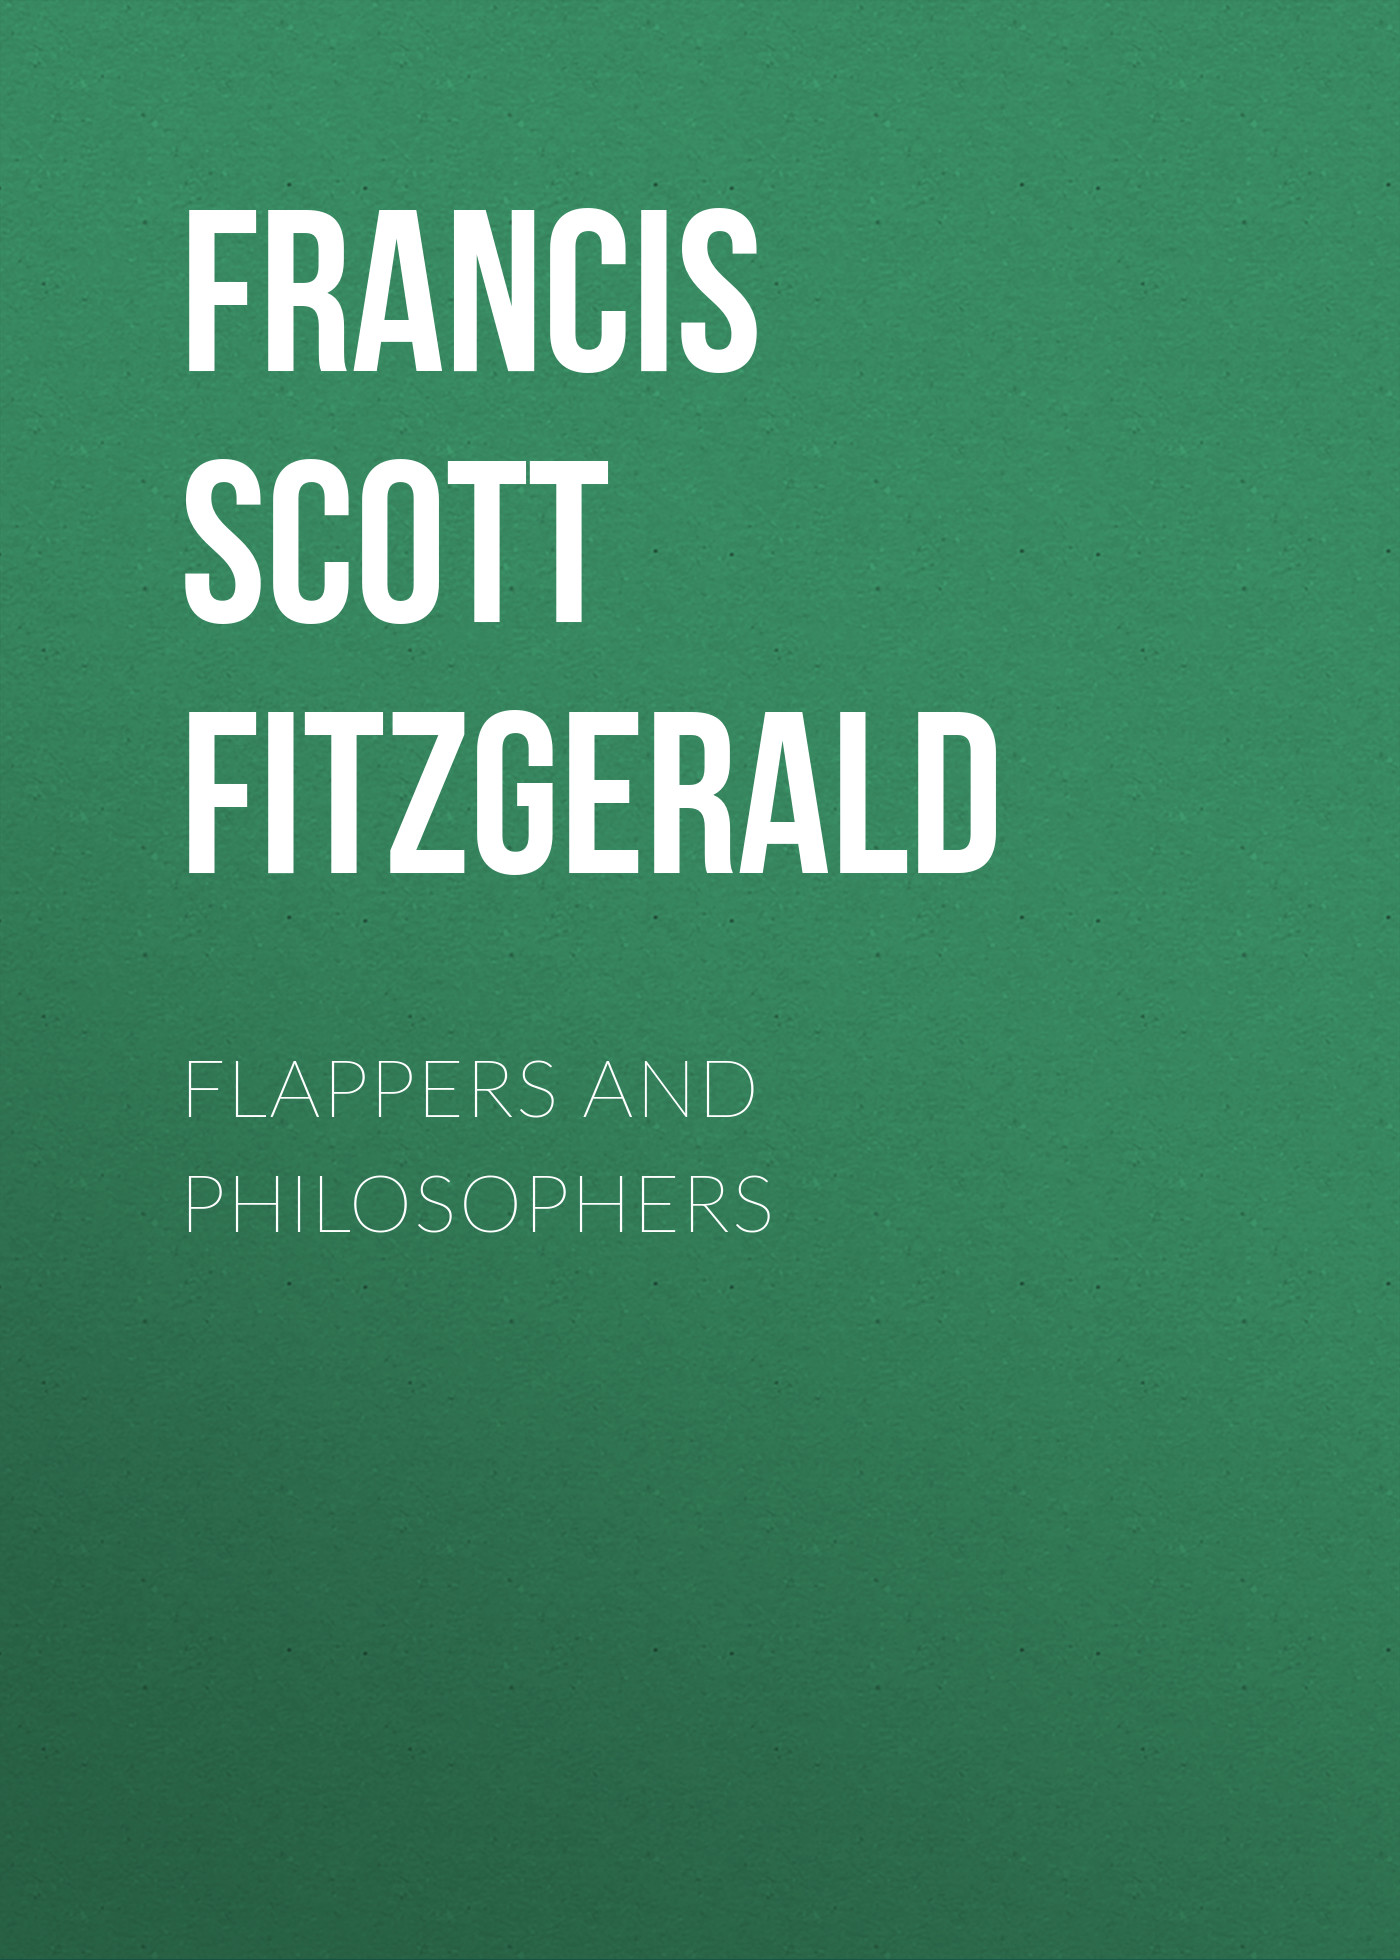 Книга Flappers and Philosophers из серии , созданная Francis Fitzgerald, может относится к жанру Литература 20 века, Зарубежная классика. Стоимость электронной книги Flappers and Philosophers с идентификатором 25560004 составляет 0 руб.